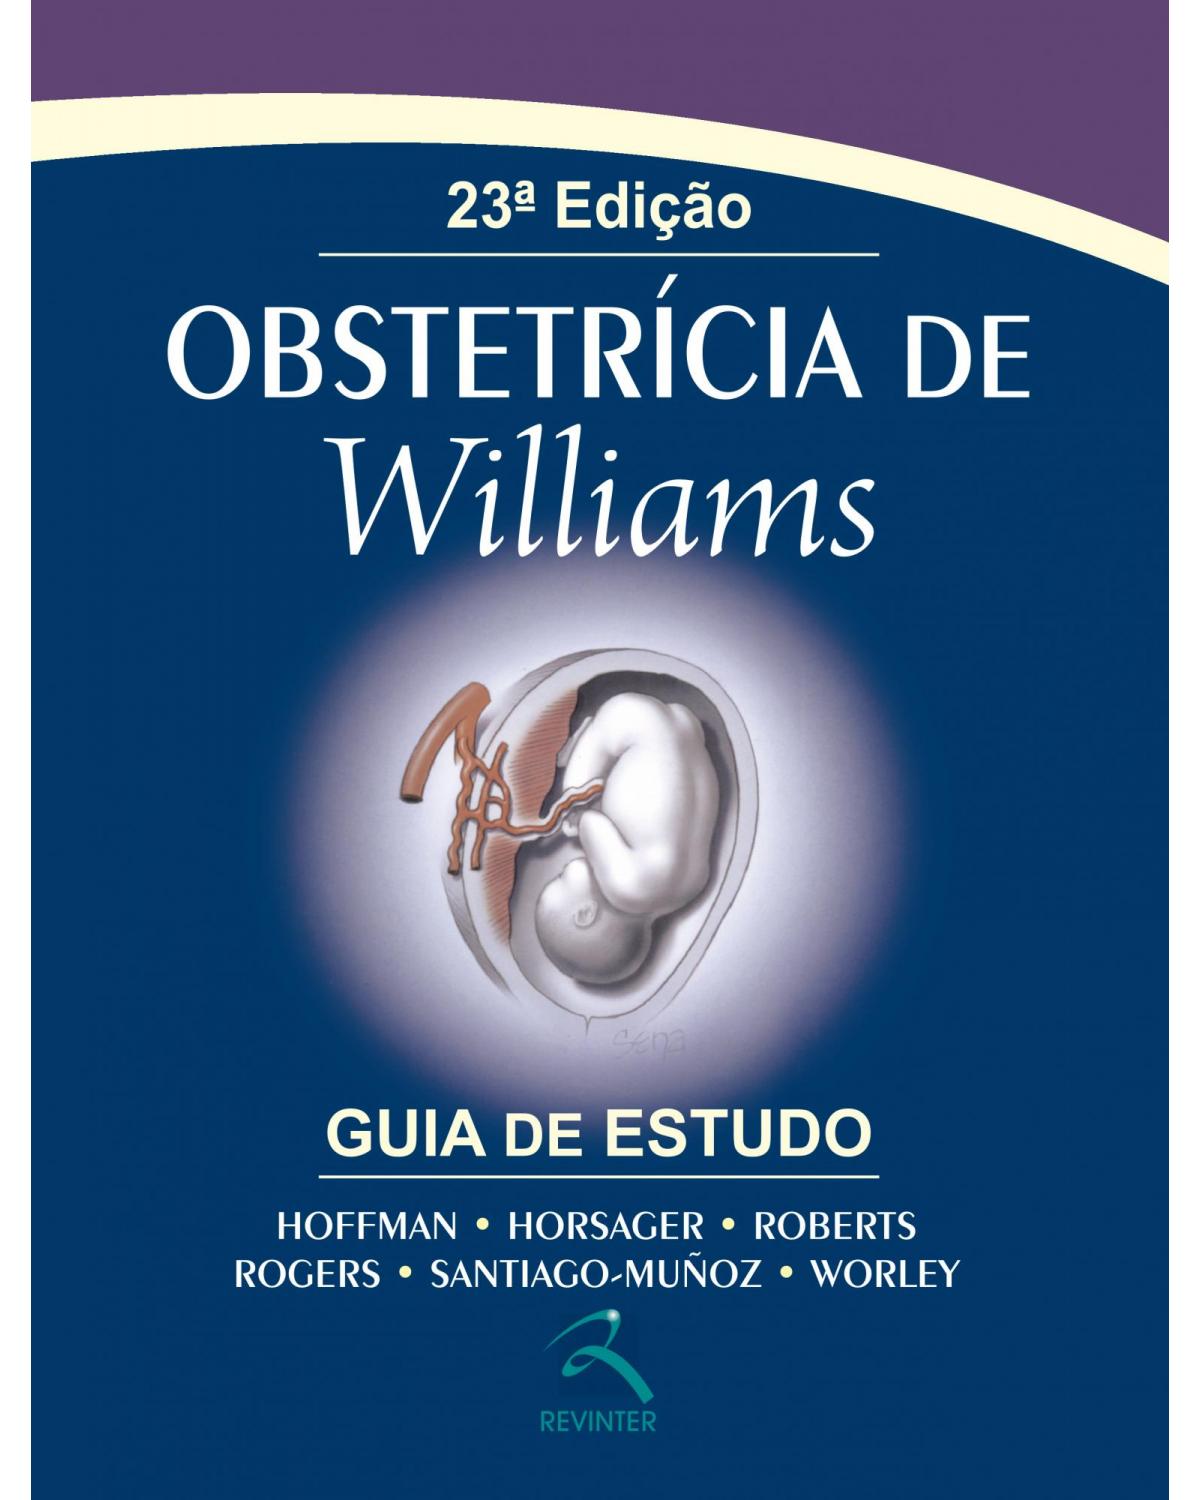 Obstetrícia de Williams - guia de estudo - 23ª Edição | 2014